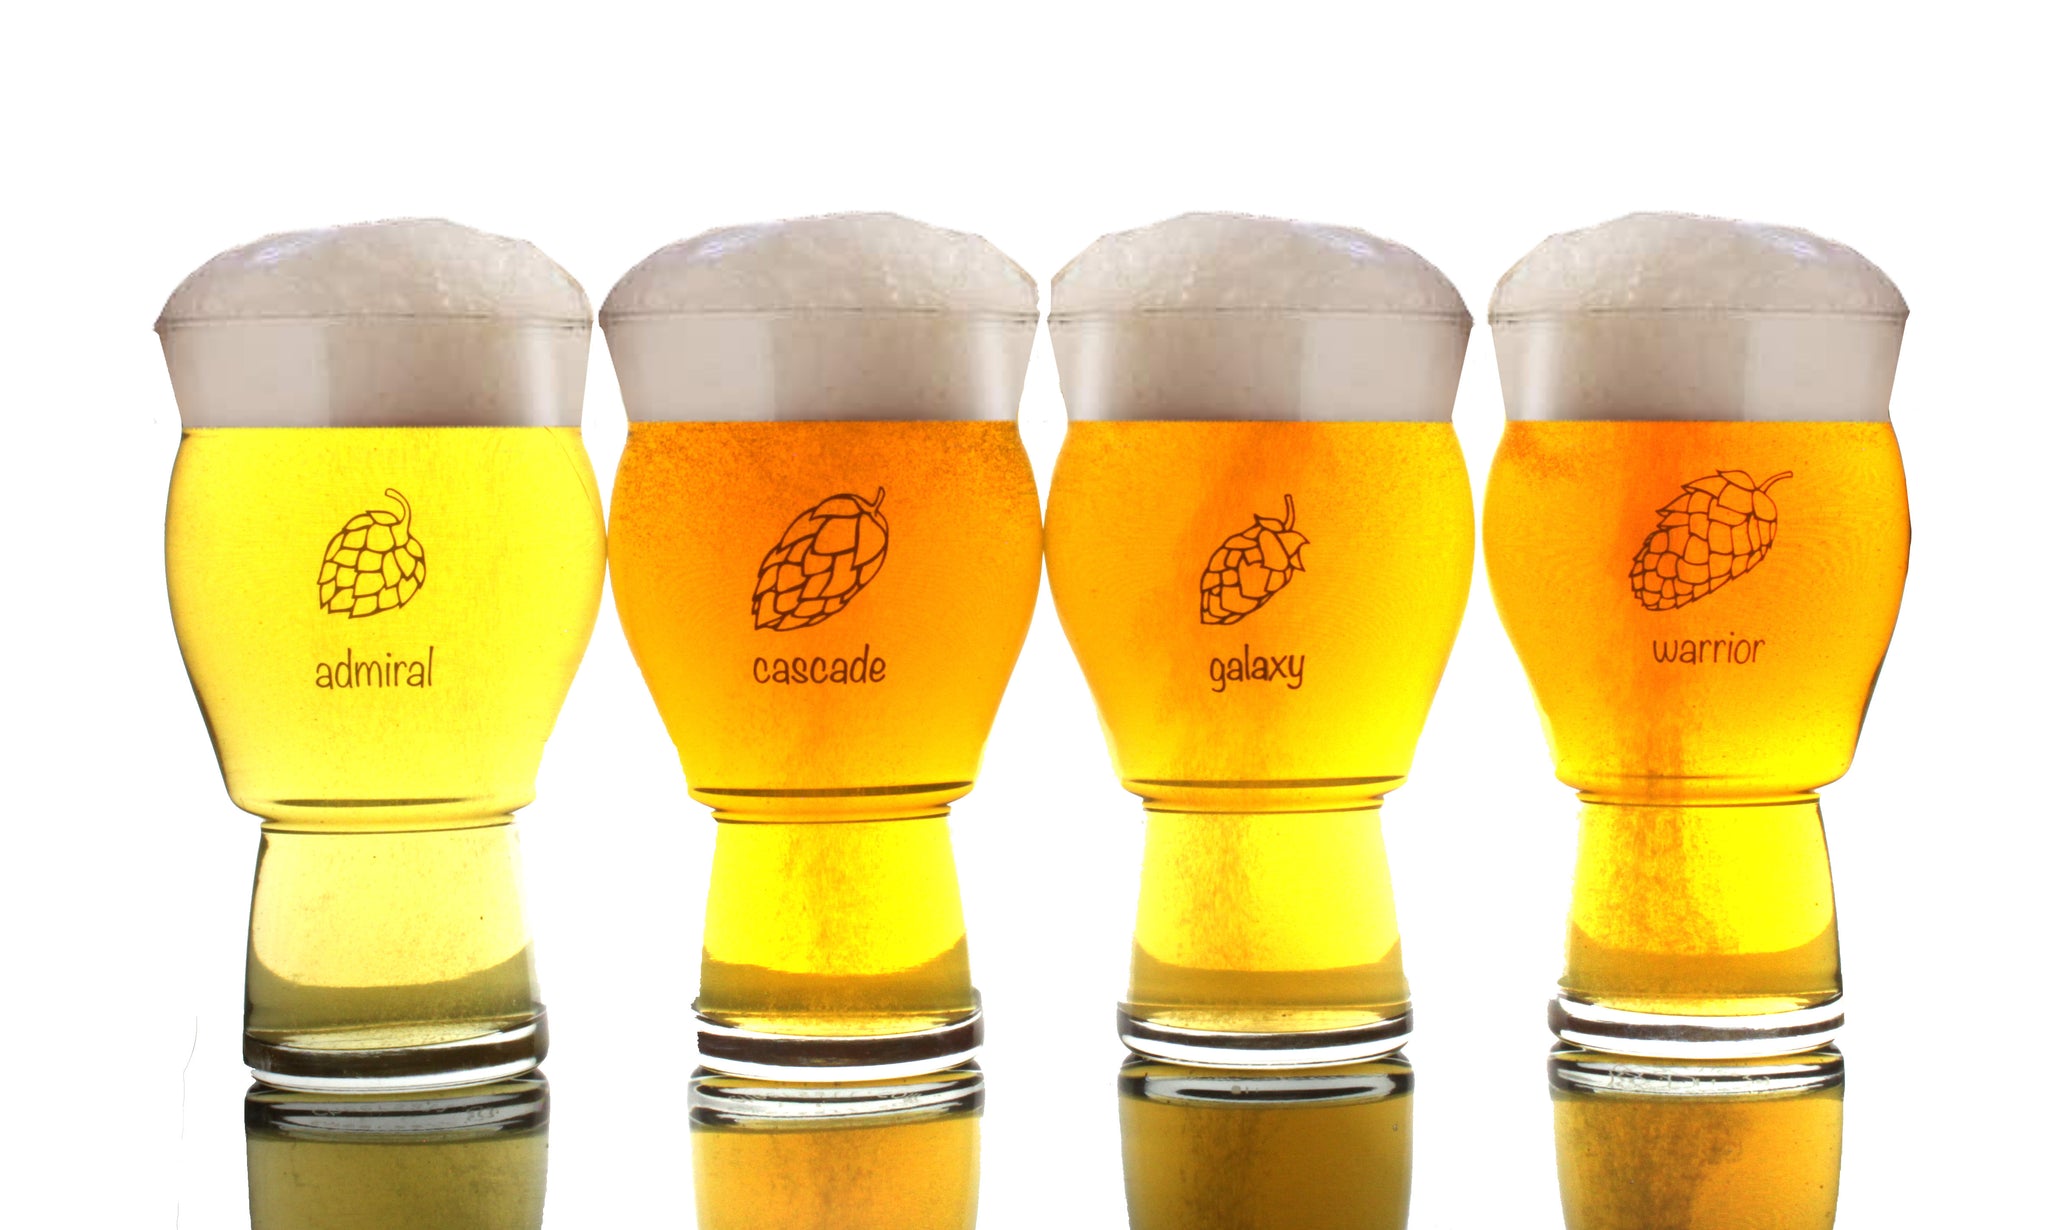 44 oz. Mip Boot Beer Glasses - AGW7GZ